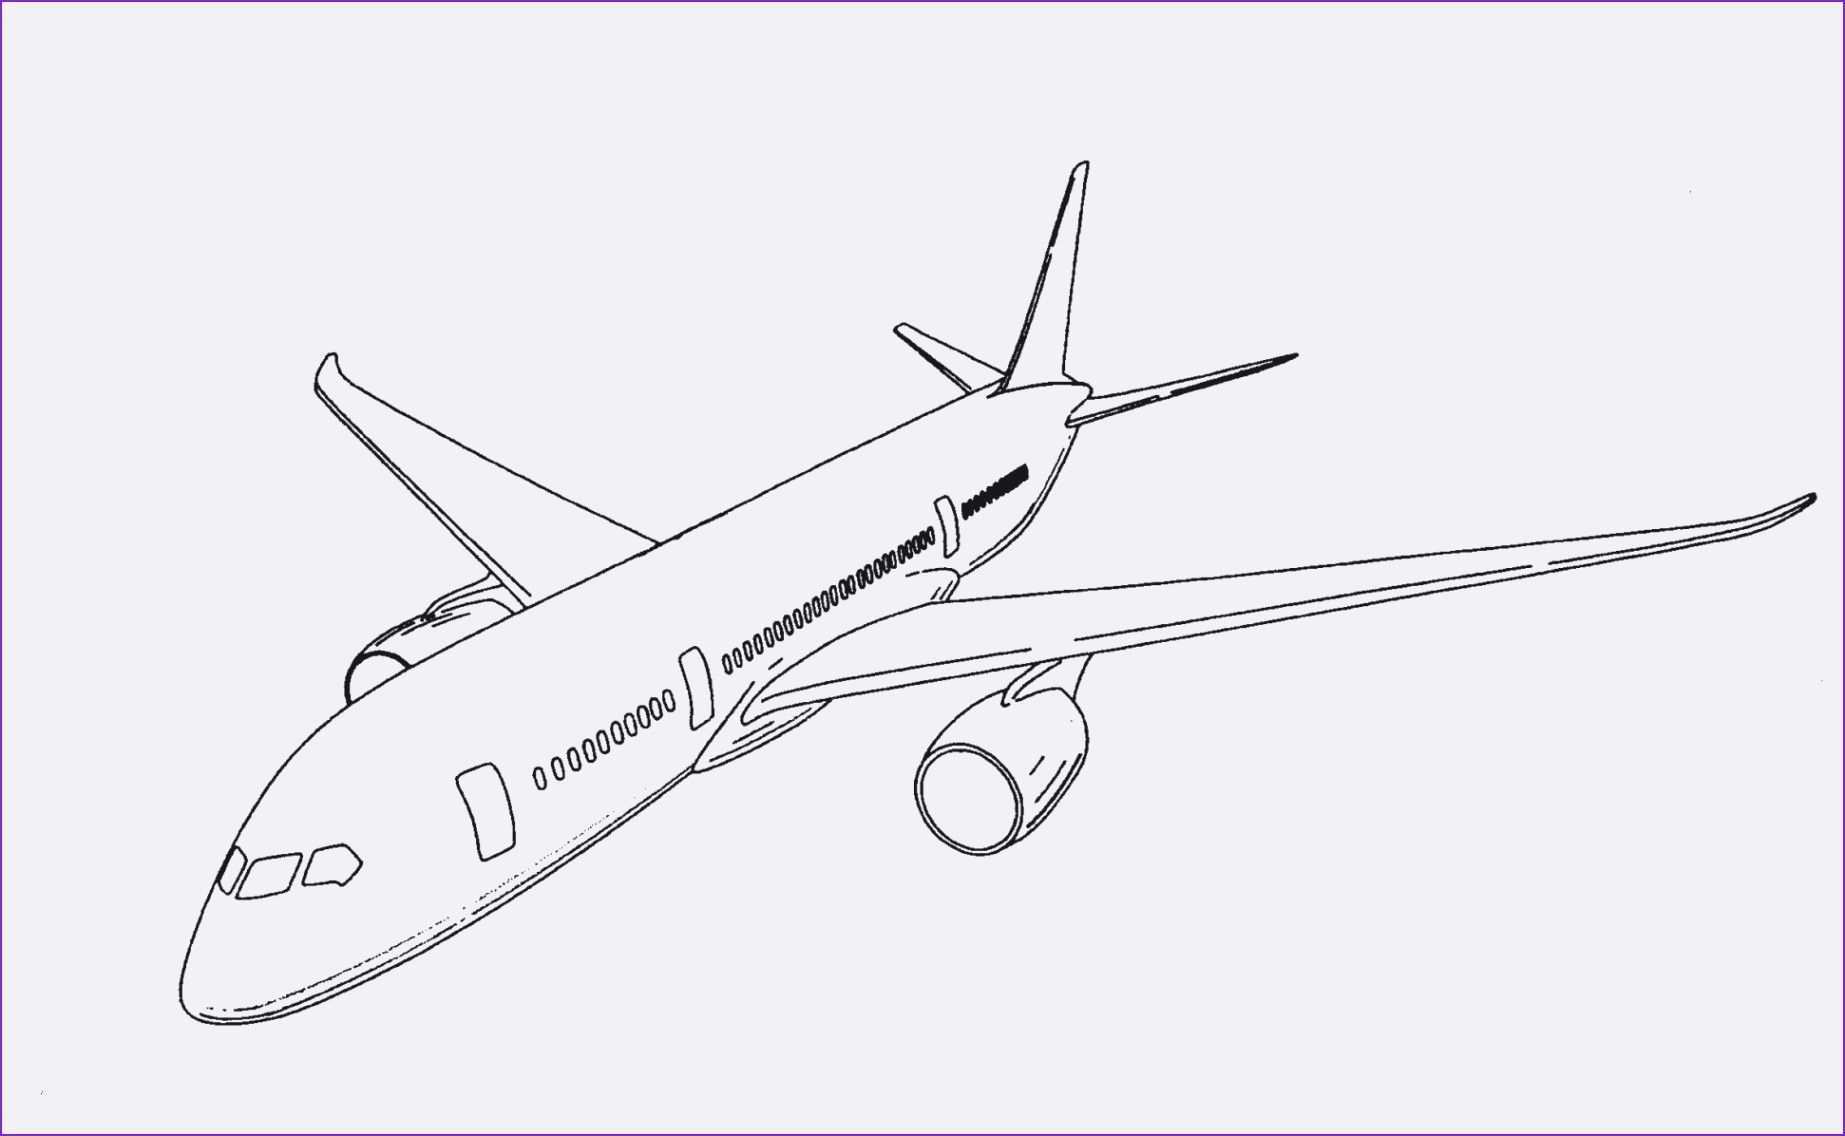 Unique Flugzeug Ausmalbild Farbung Malvorlagen Malvorlagenfurkinder Flugzeug Ausmalbild Ausmalbild Malvorlagen